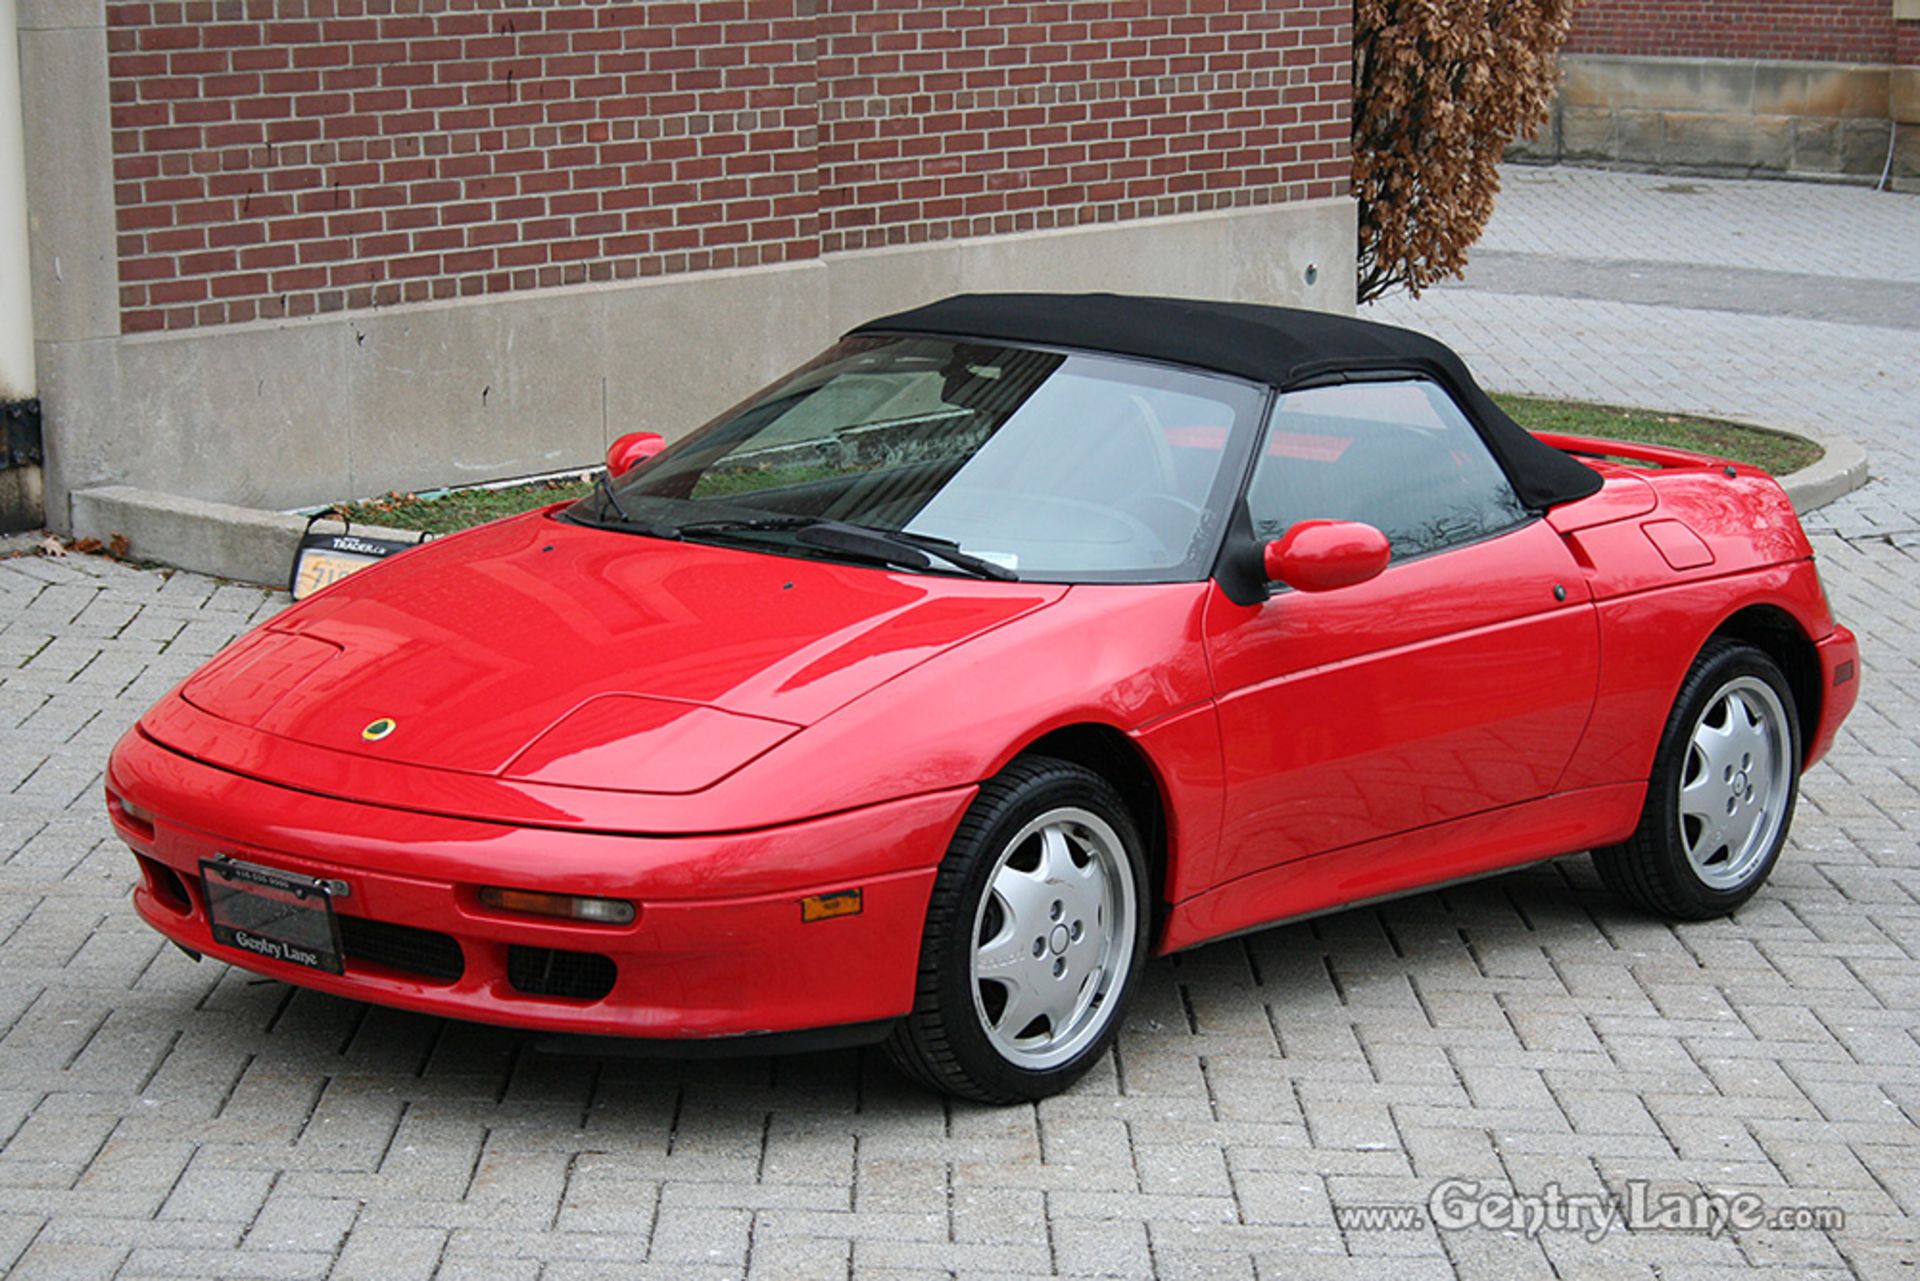 1992 Lotus Elan SE Convertible - Image 9 of 23